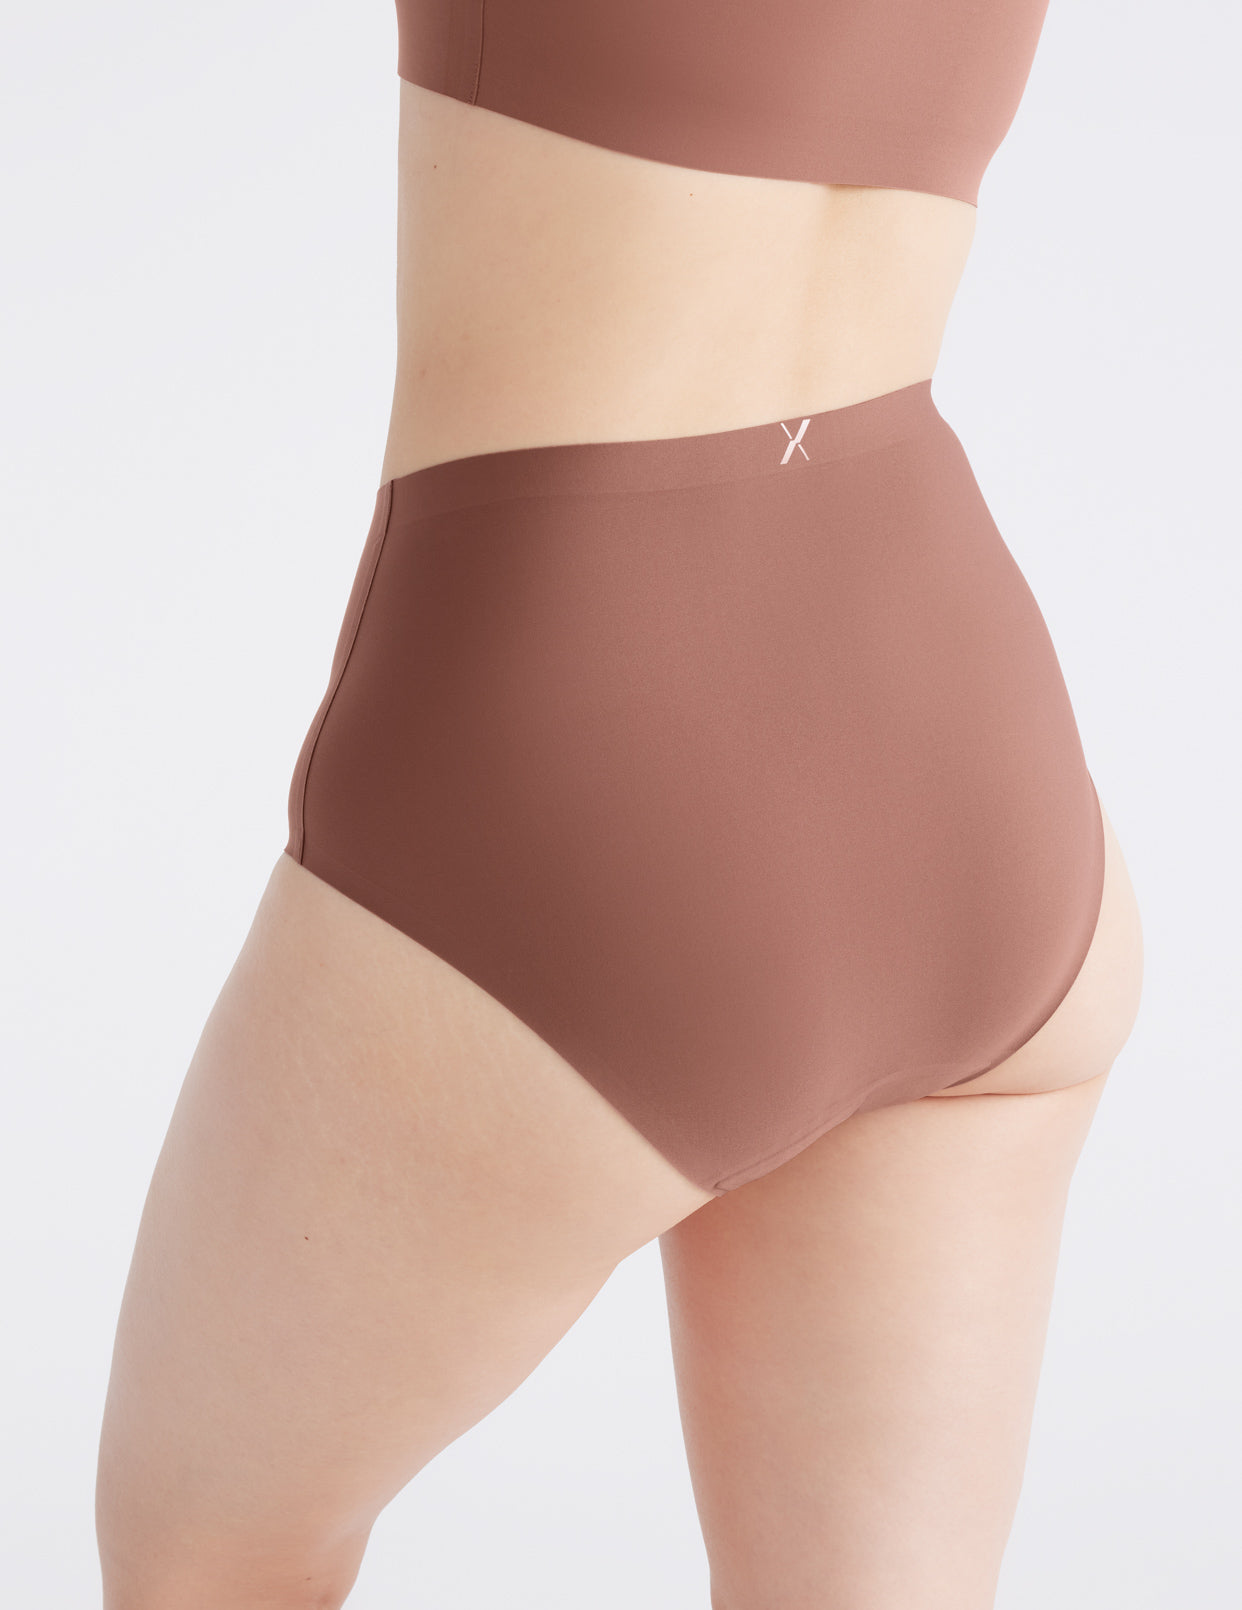  KNIX Super Leakproof High Rise Underwear - Period Underwear  For Women - Midnight, XXXX-Large